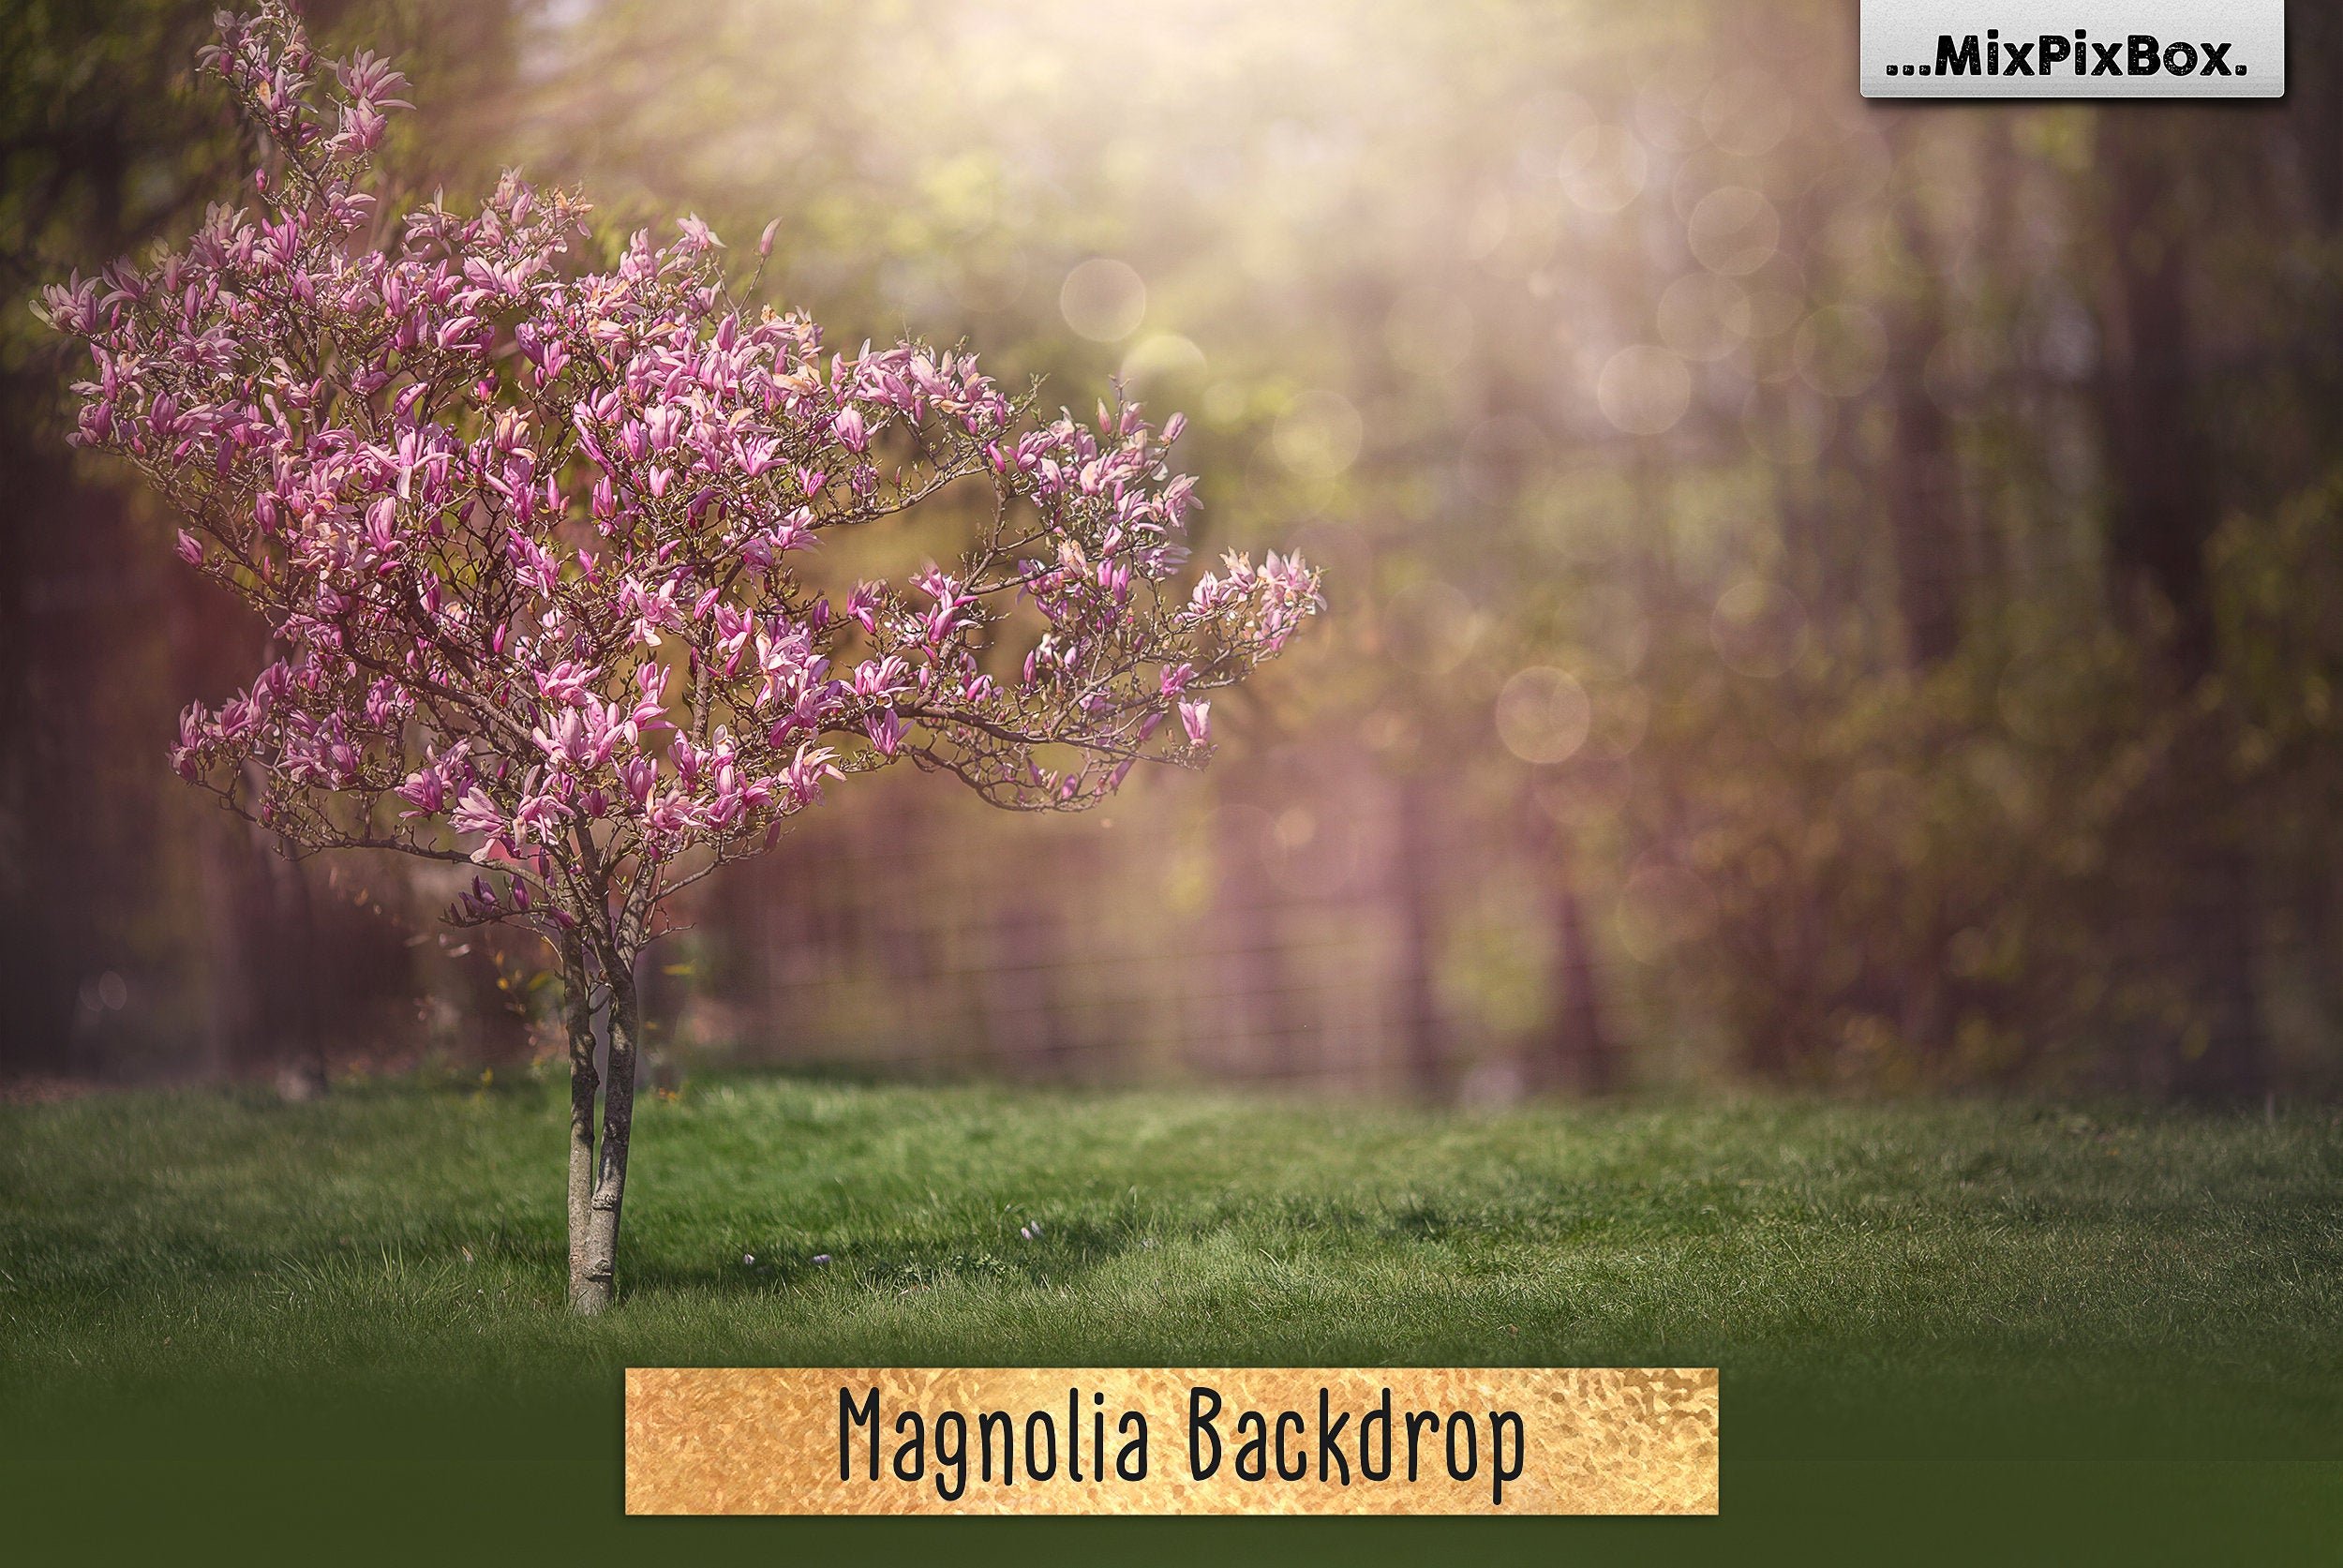 Magnolia Backdrop